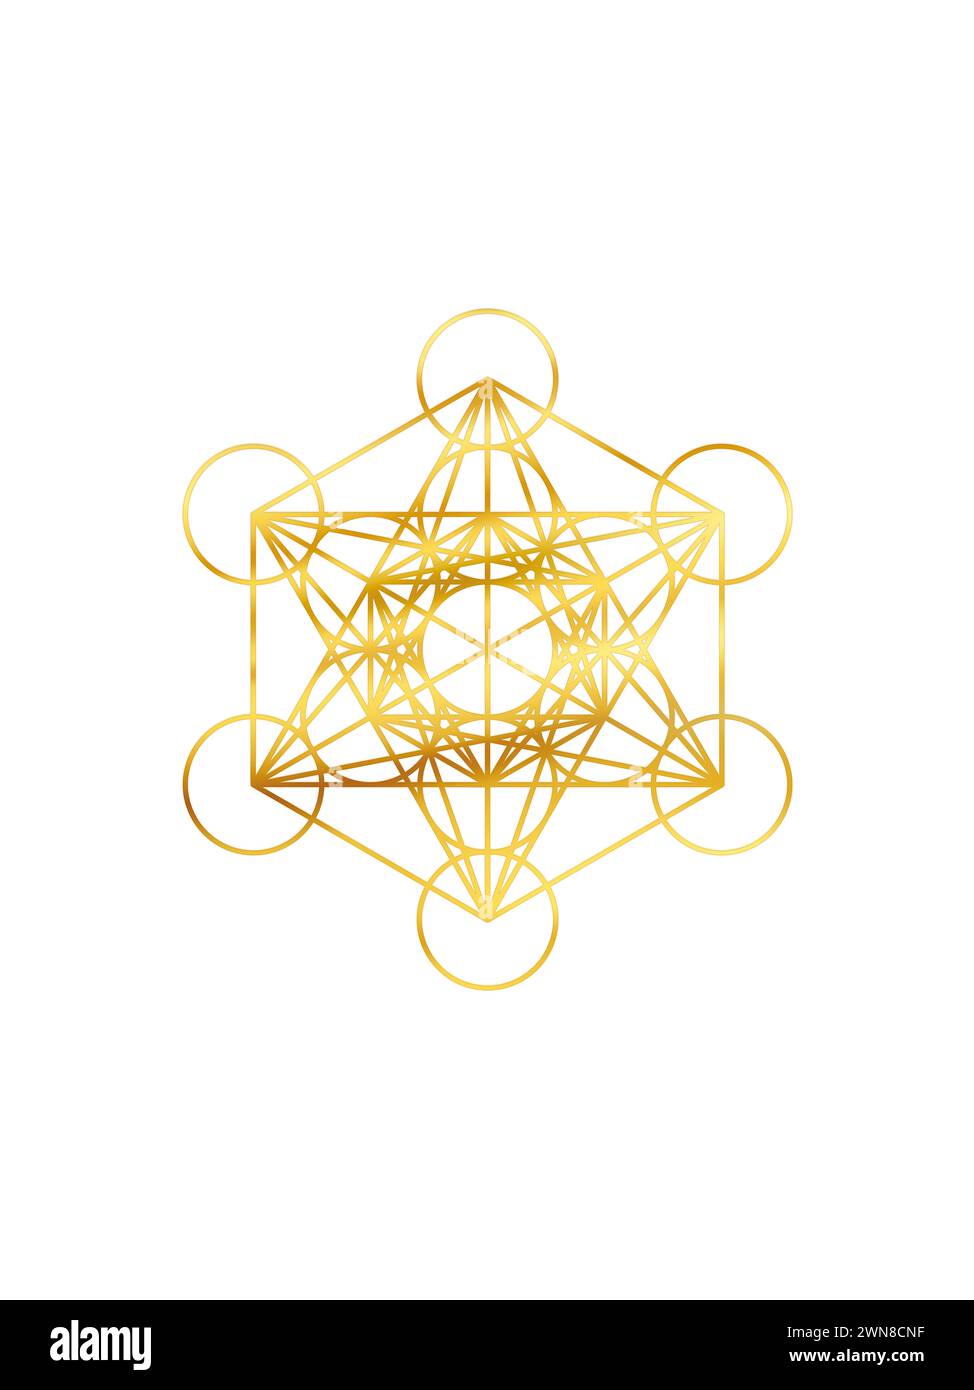 Simbolo Metatron cubo dorato isolato su sfondo bianco. Geometria sacra simbolo dorato del cubo di metatron. Foto Stock